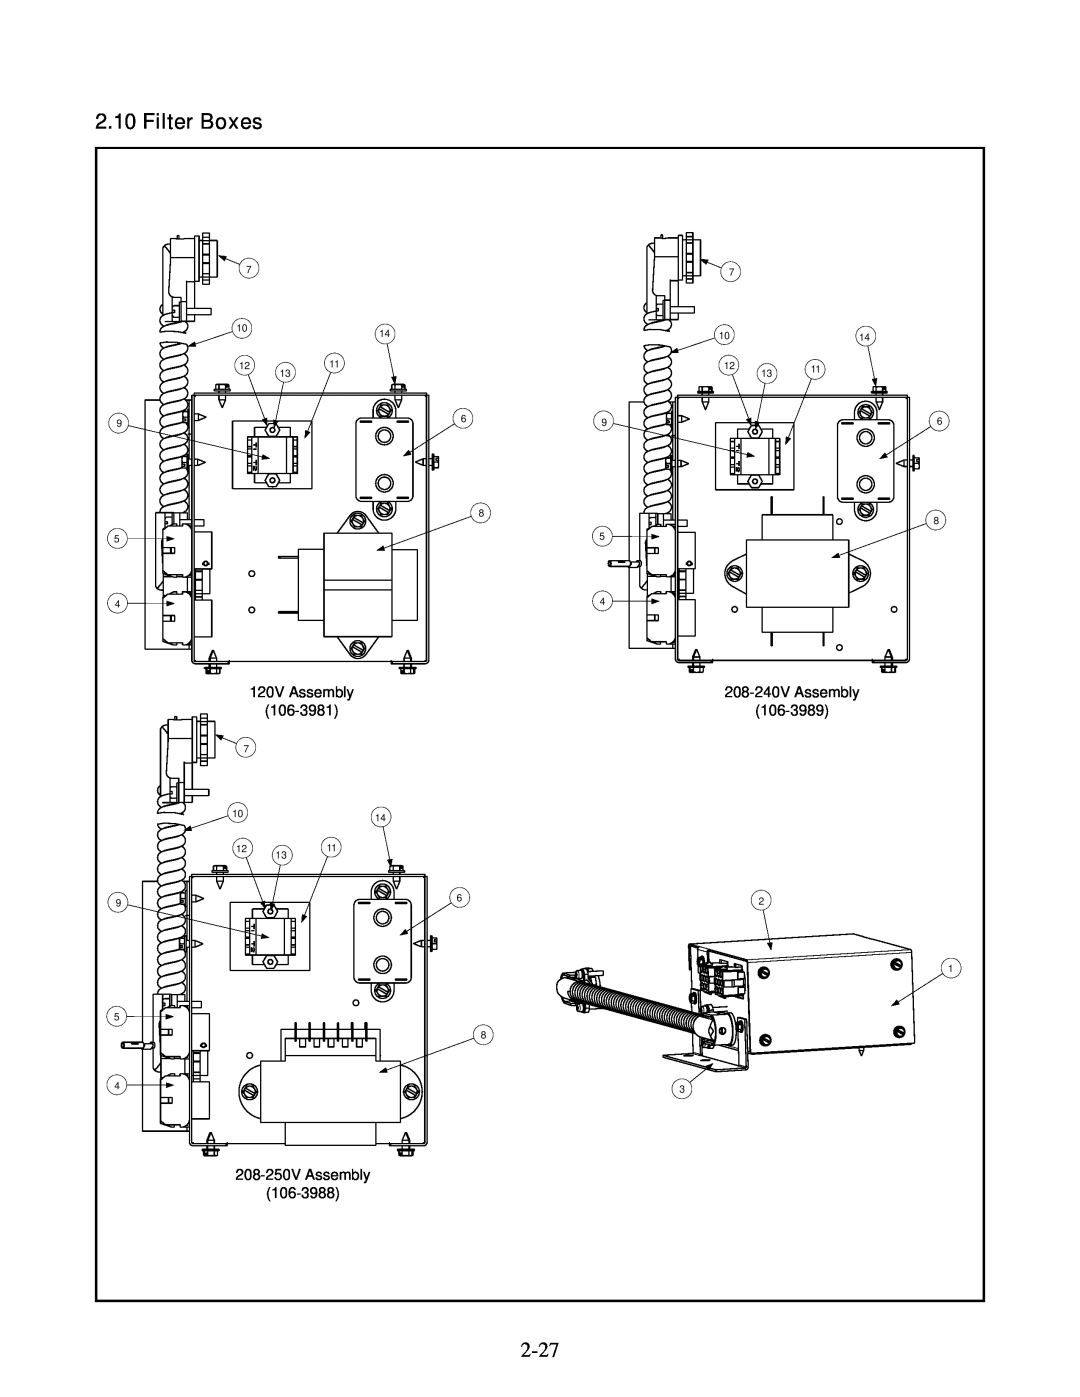 Frymaster 35, 45 manual Filter Boxes, 120V Assembly, 208-240V Assembly, 106-3981, 106-3989, 208-250V Assembly, 106-3988 